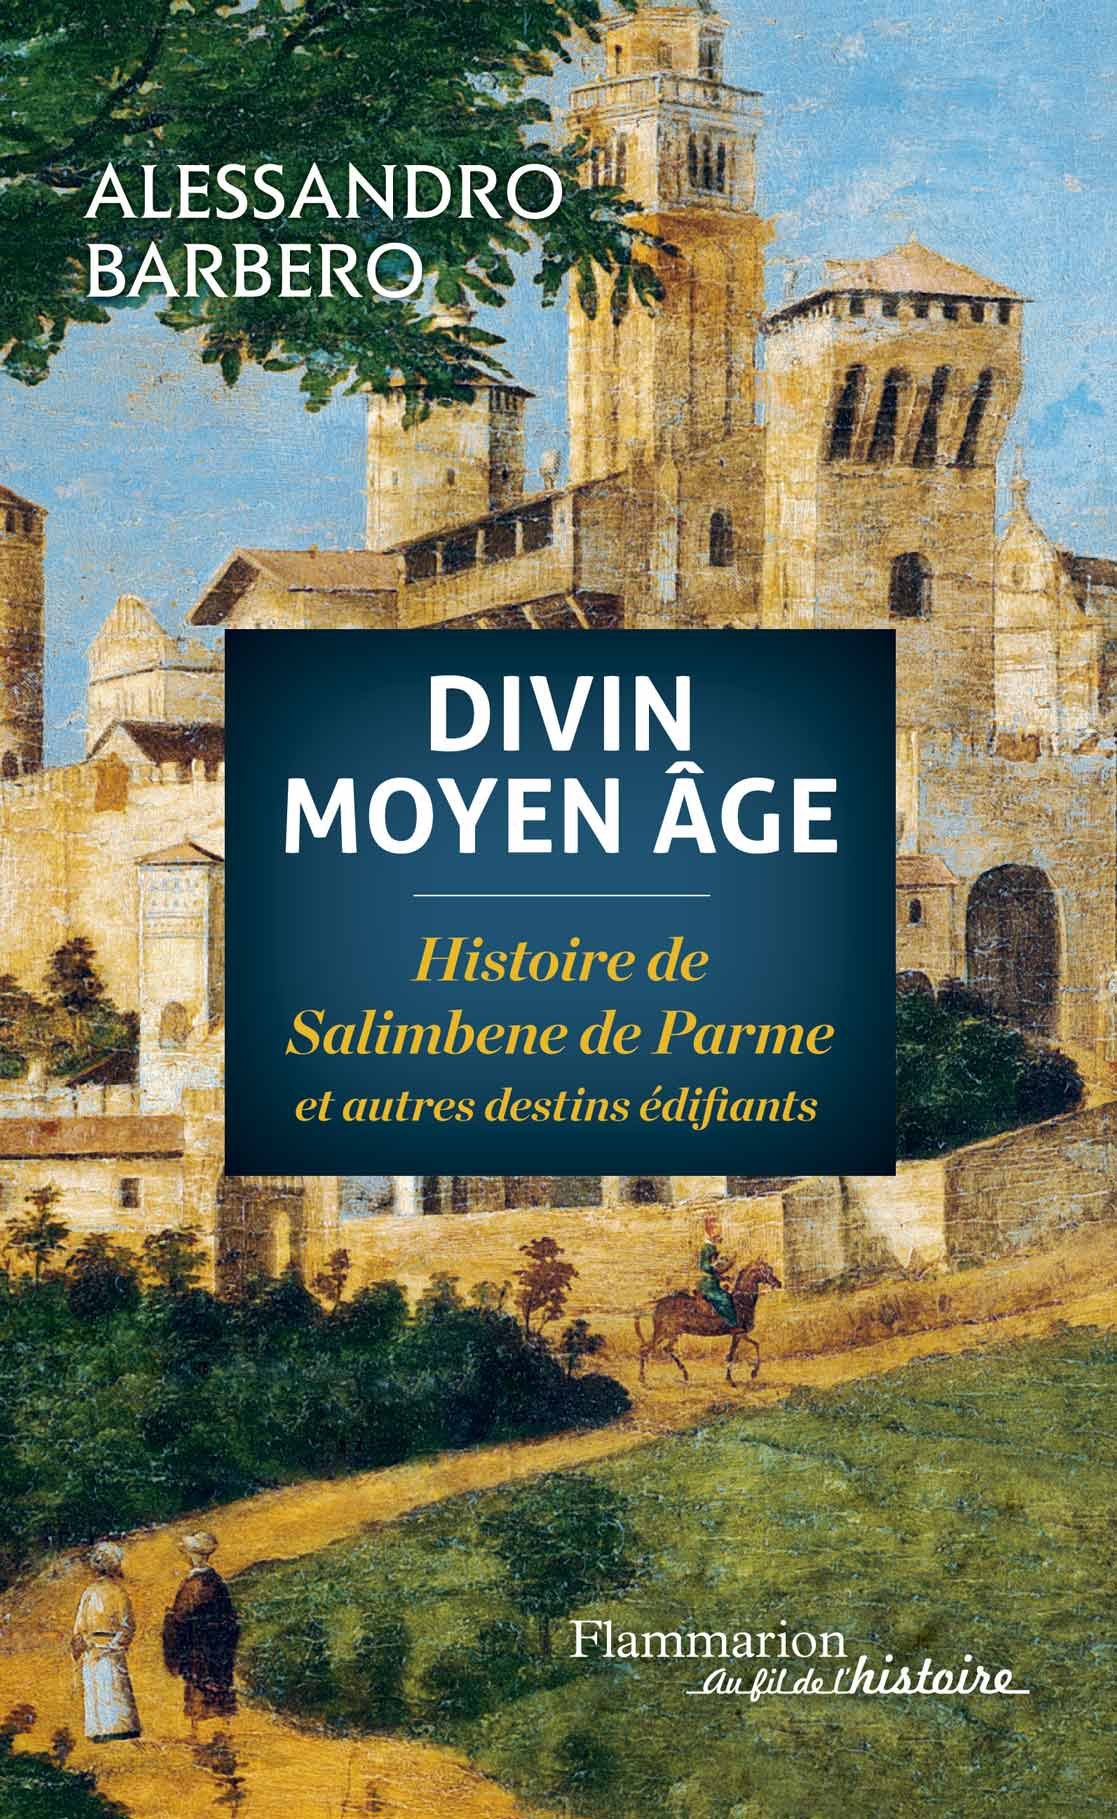 Divin Moyen Age. Histoire de Salimbene de Parme et autres destins édifiants, 2014, 224 p.